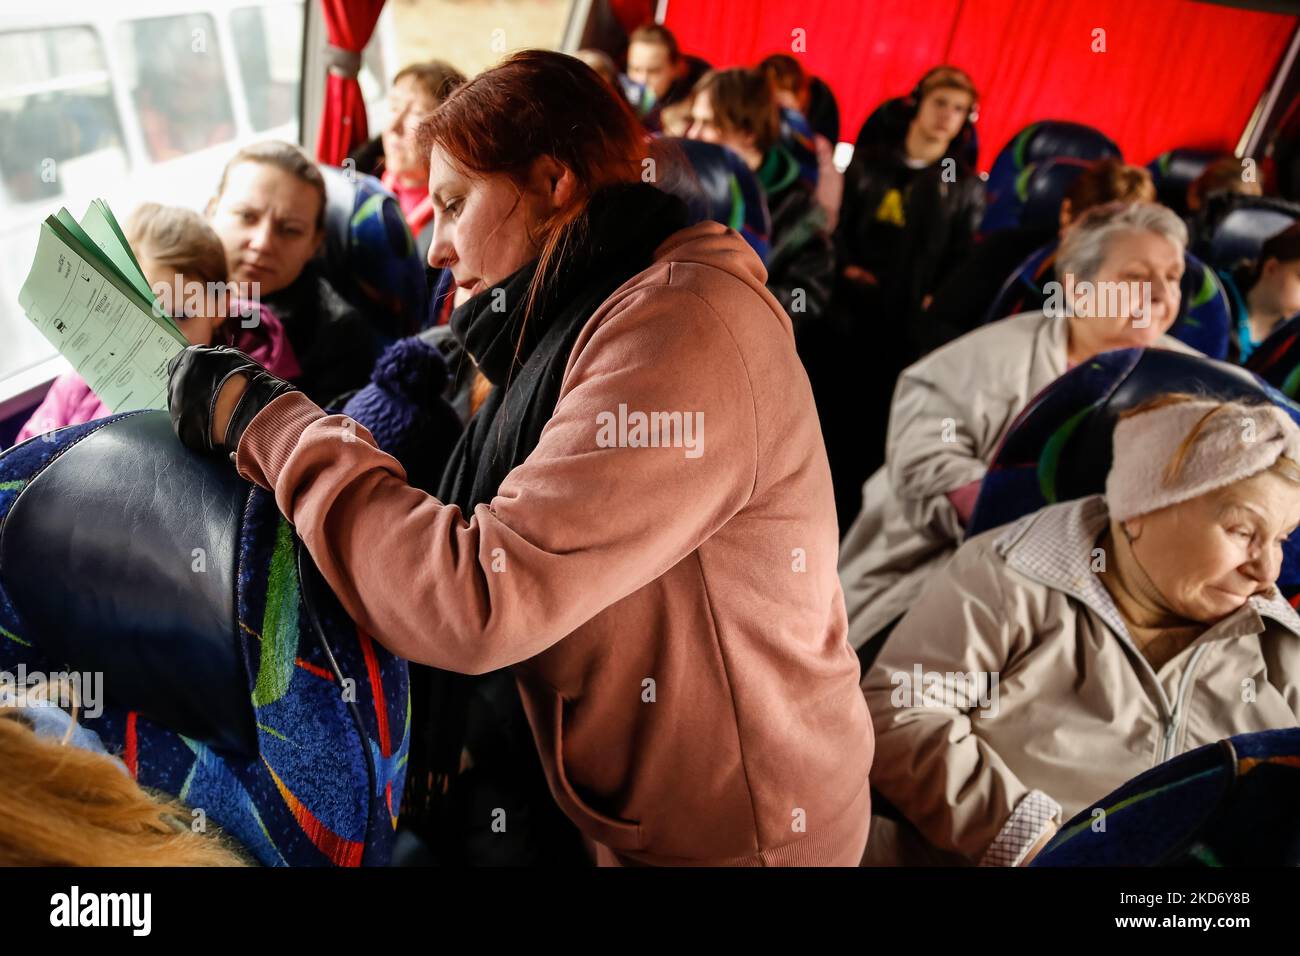 Una donna Ucraina, Olga Oszal dell'agenzia di viaggio Abdar a Cracovia, Polonia fa la lista dei rifugiati che l'agenzia ha preso da Lviv, Ucraina mentre partono dalla città per la Polonia, come più di due milioni di persone hanno già fuggito l'Ucraina per la Polonia, 5 aprile 2022. Mentre la Federazione Russa invase l'Ucraina, il conflitto dovrebbe costringere fino a 5 milioni di ucraini a fuggire dal paese. Molti rifugiati cercano asilo in Polonia. La maggior parte degli aiuti di beneficenza in Polonia è fornita da individui, ONG e imprese. Abdar agenzia di viaggi è un business gestito da matrimonio misto - ucraino Olga e Maciej polacco Foto Stock